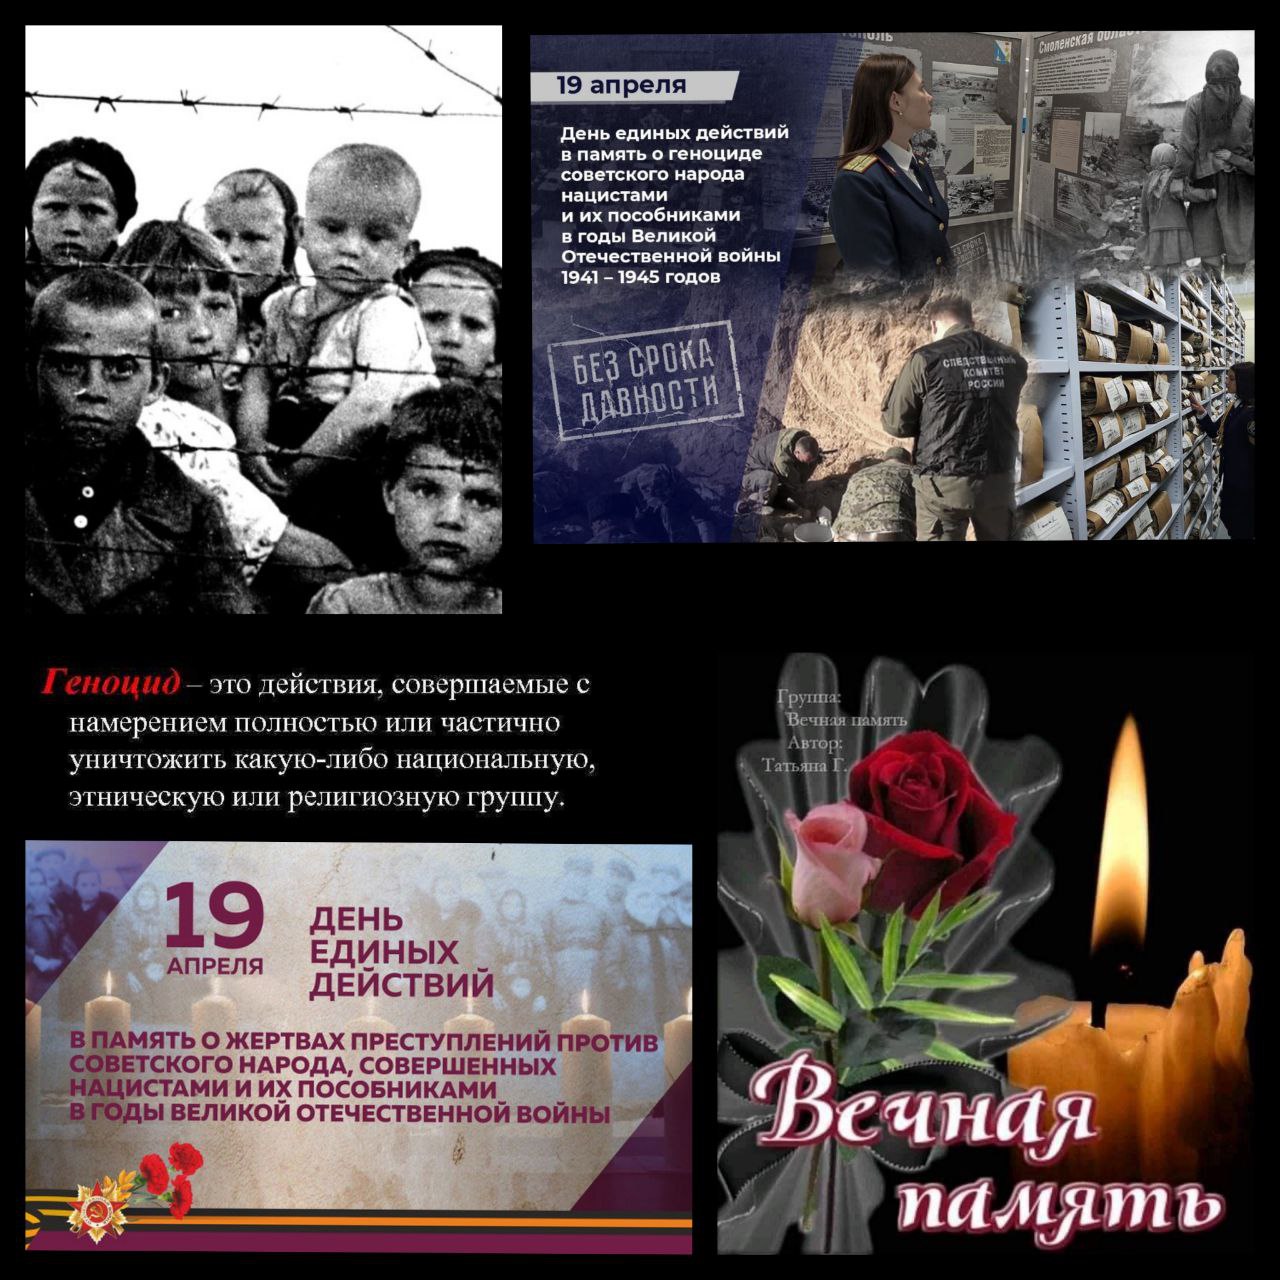 19 апреля геноцид советского народа